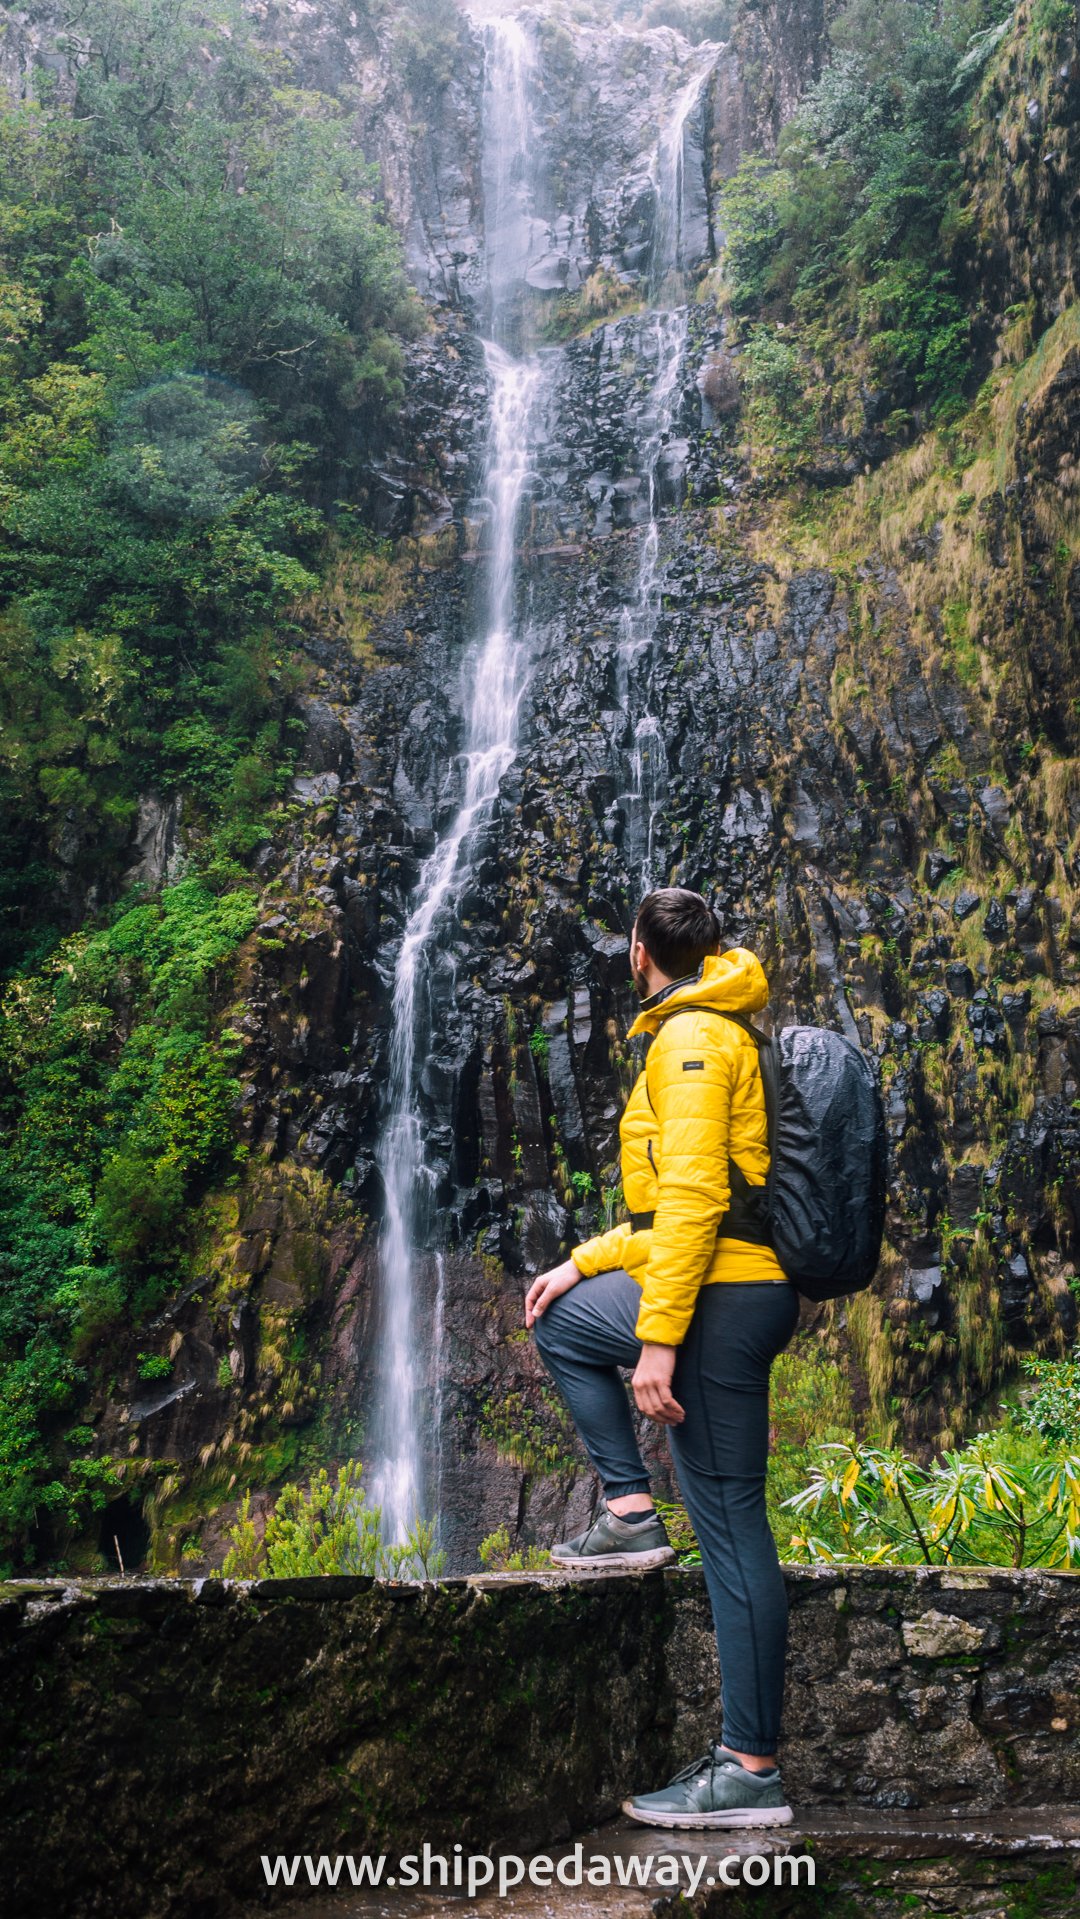 Rain at Risco Waterfall, 25 Fontes, Madeira